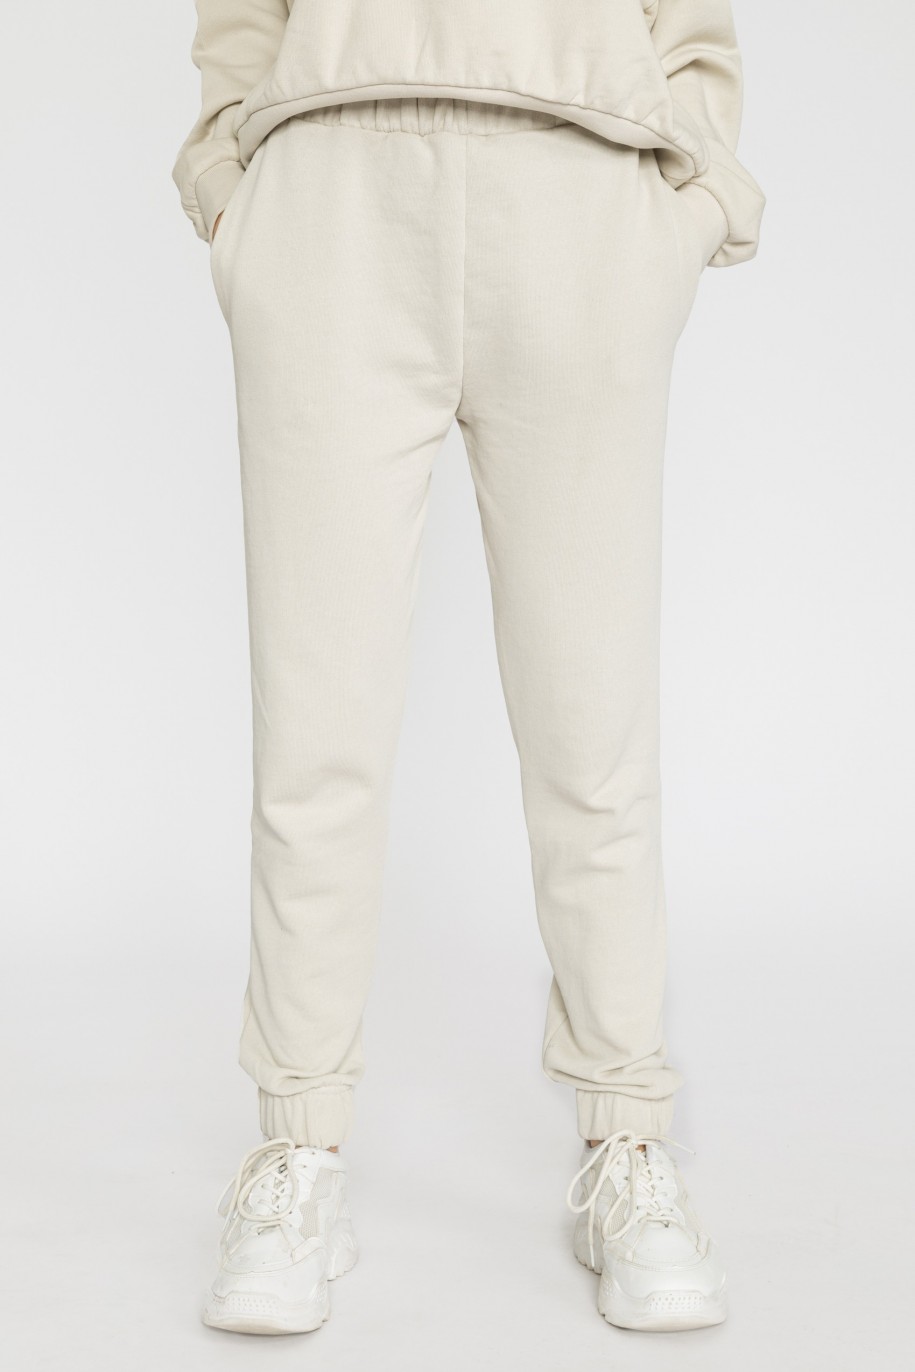 Kremowe spodnie dresowe dla dziewczyny - 31938